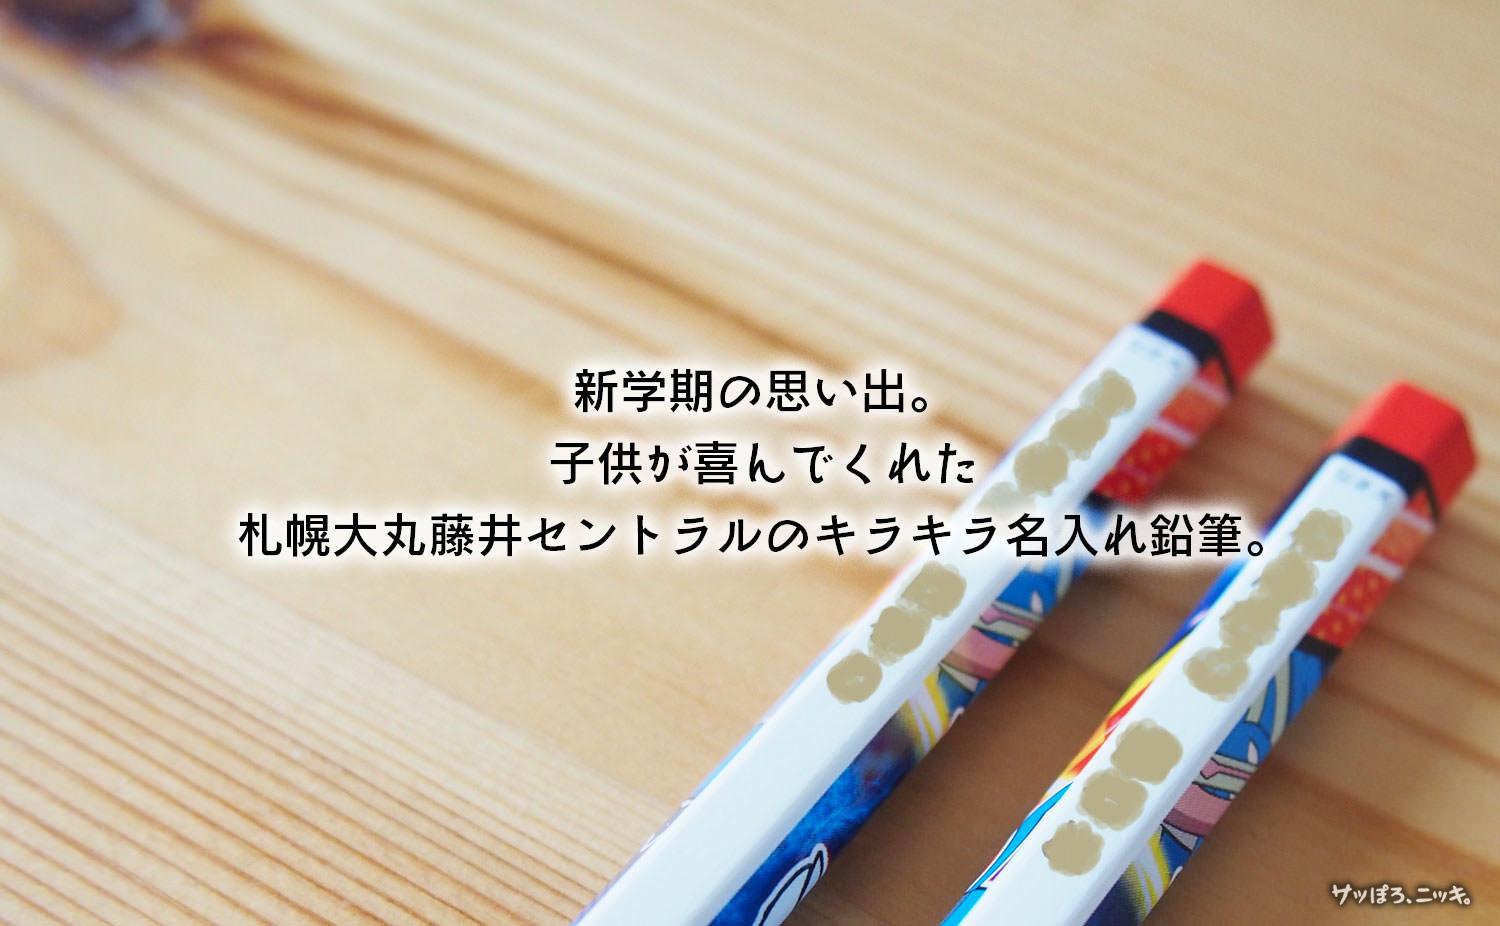 札幌大丸藤井セントラルのキラキラ名入れ鉛筆